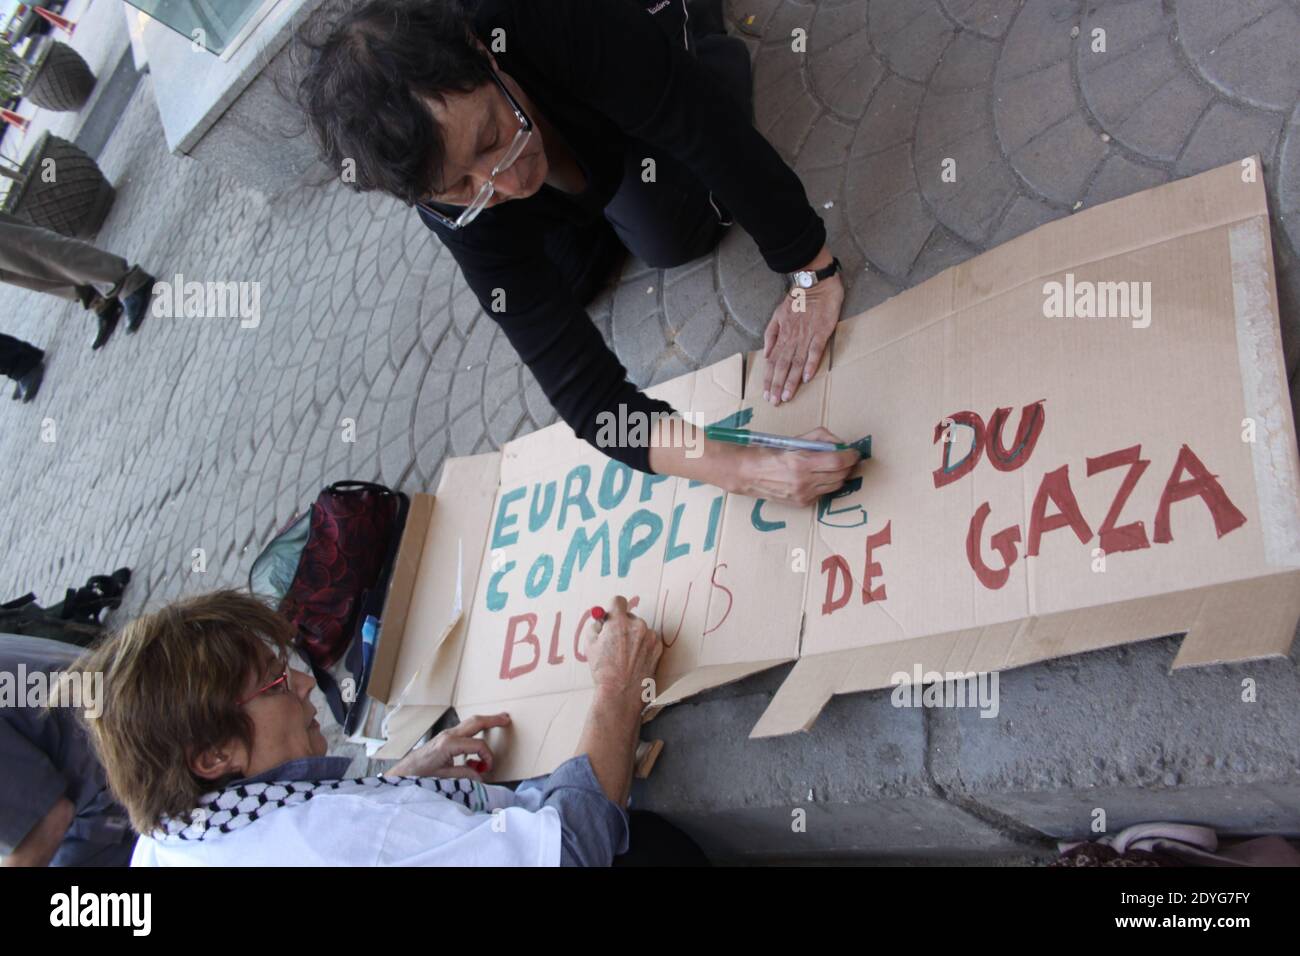 Le Caire Freedom Gaza March : délégation française, luxembourgeoise et belge devant les bureaus de la représentation de l'Europe Stockfoto